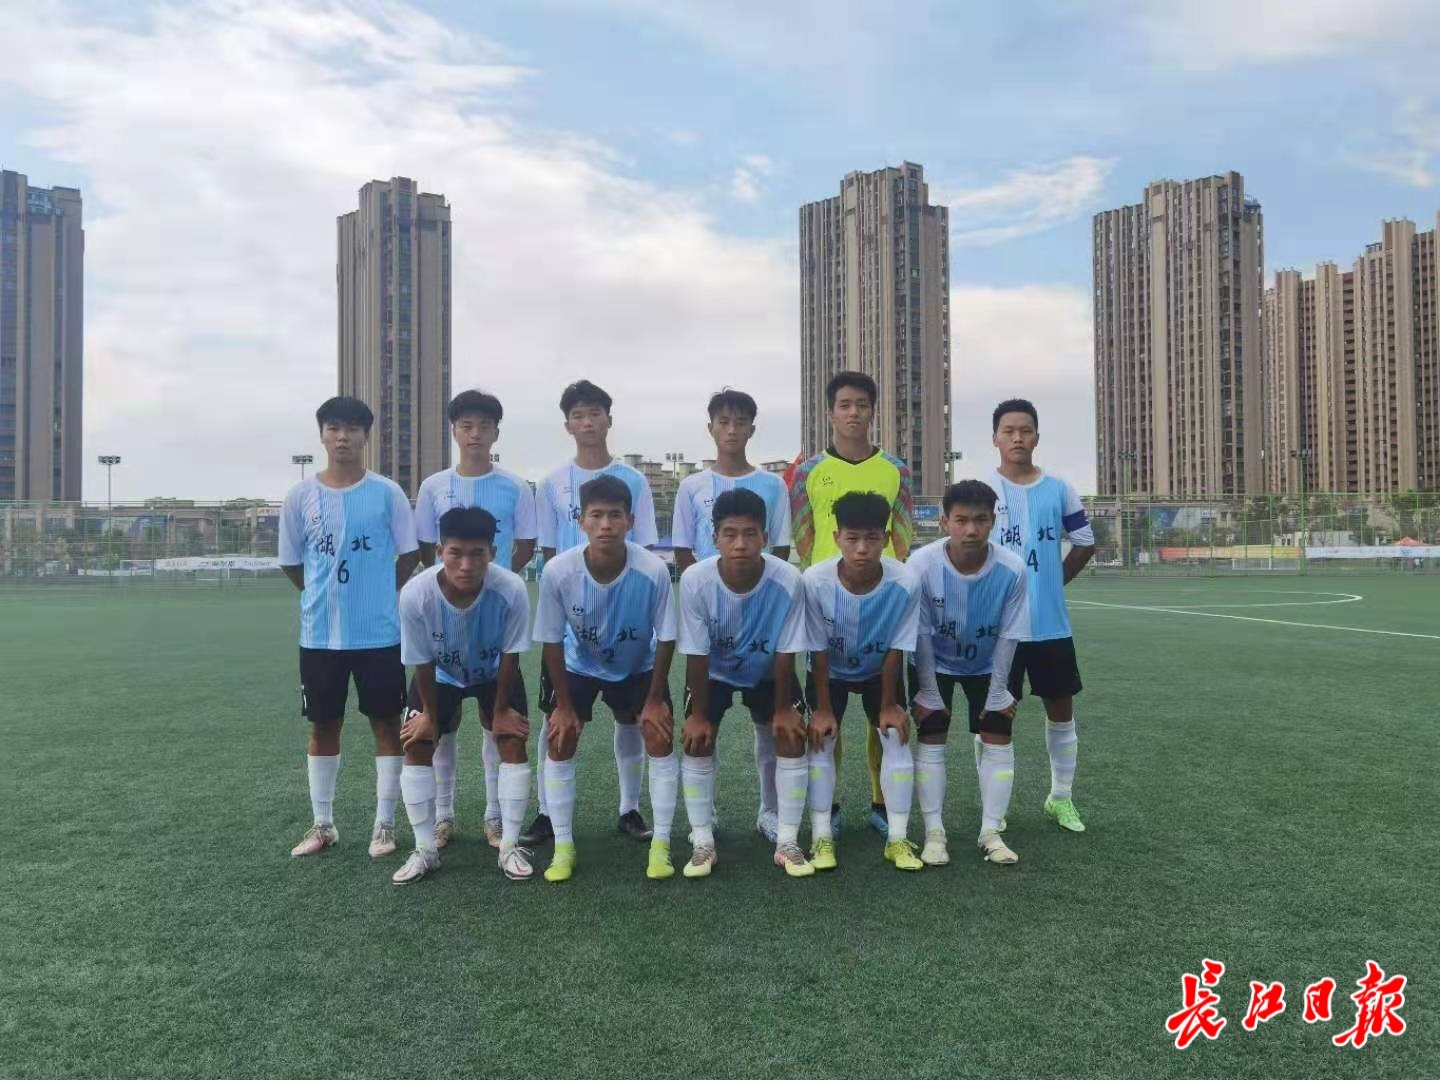 创造历史最好成绩的武汉中学生足球队里,这些小球员都出自江汉